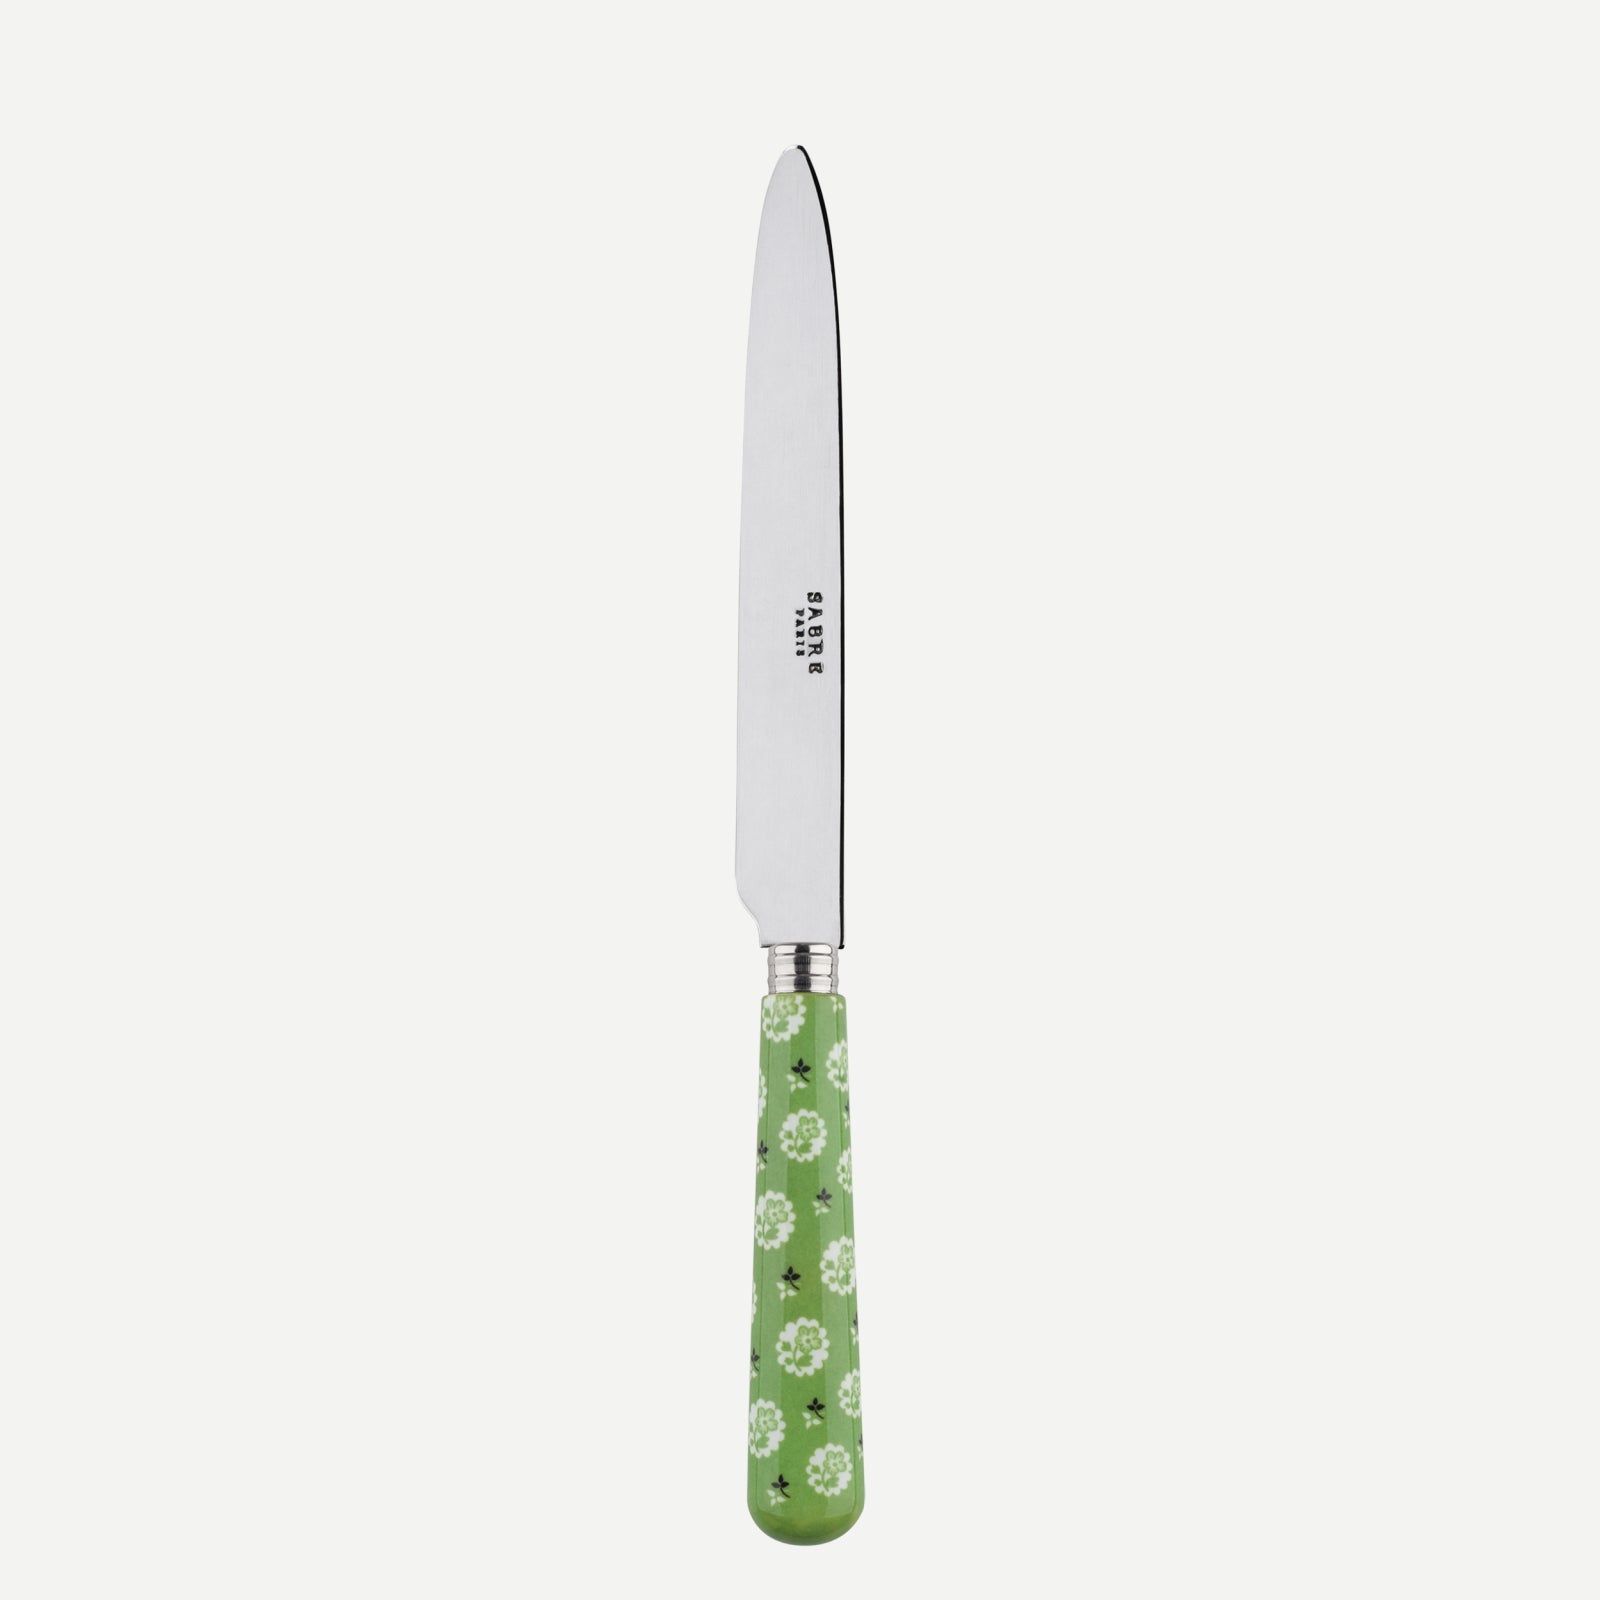 Dinner knife - Provencal - Garden green